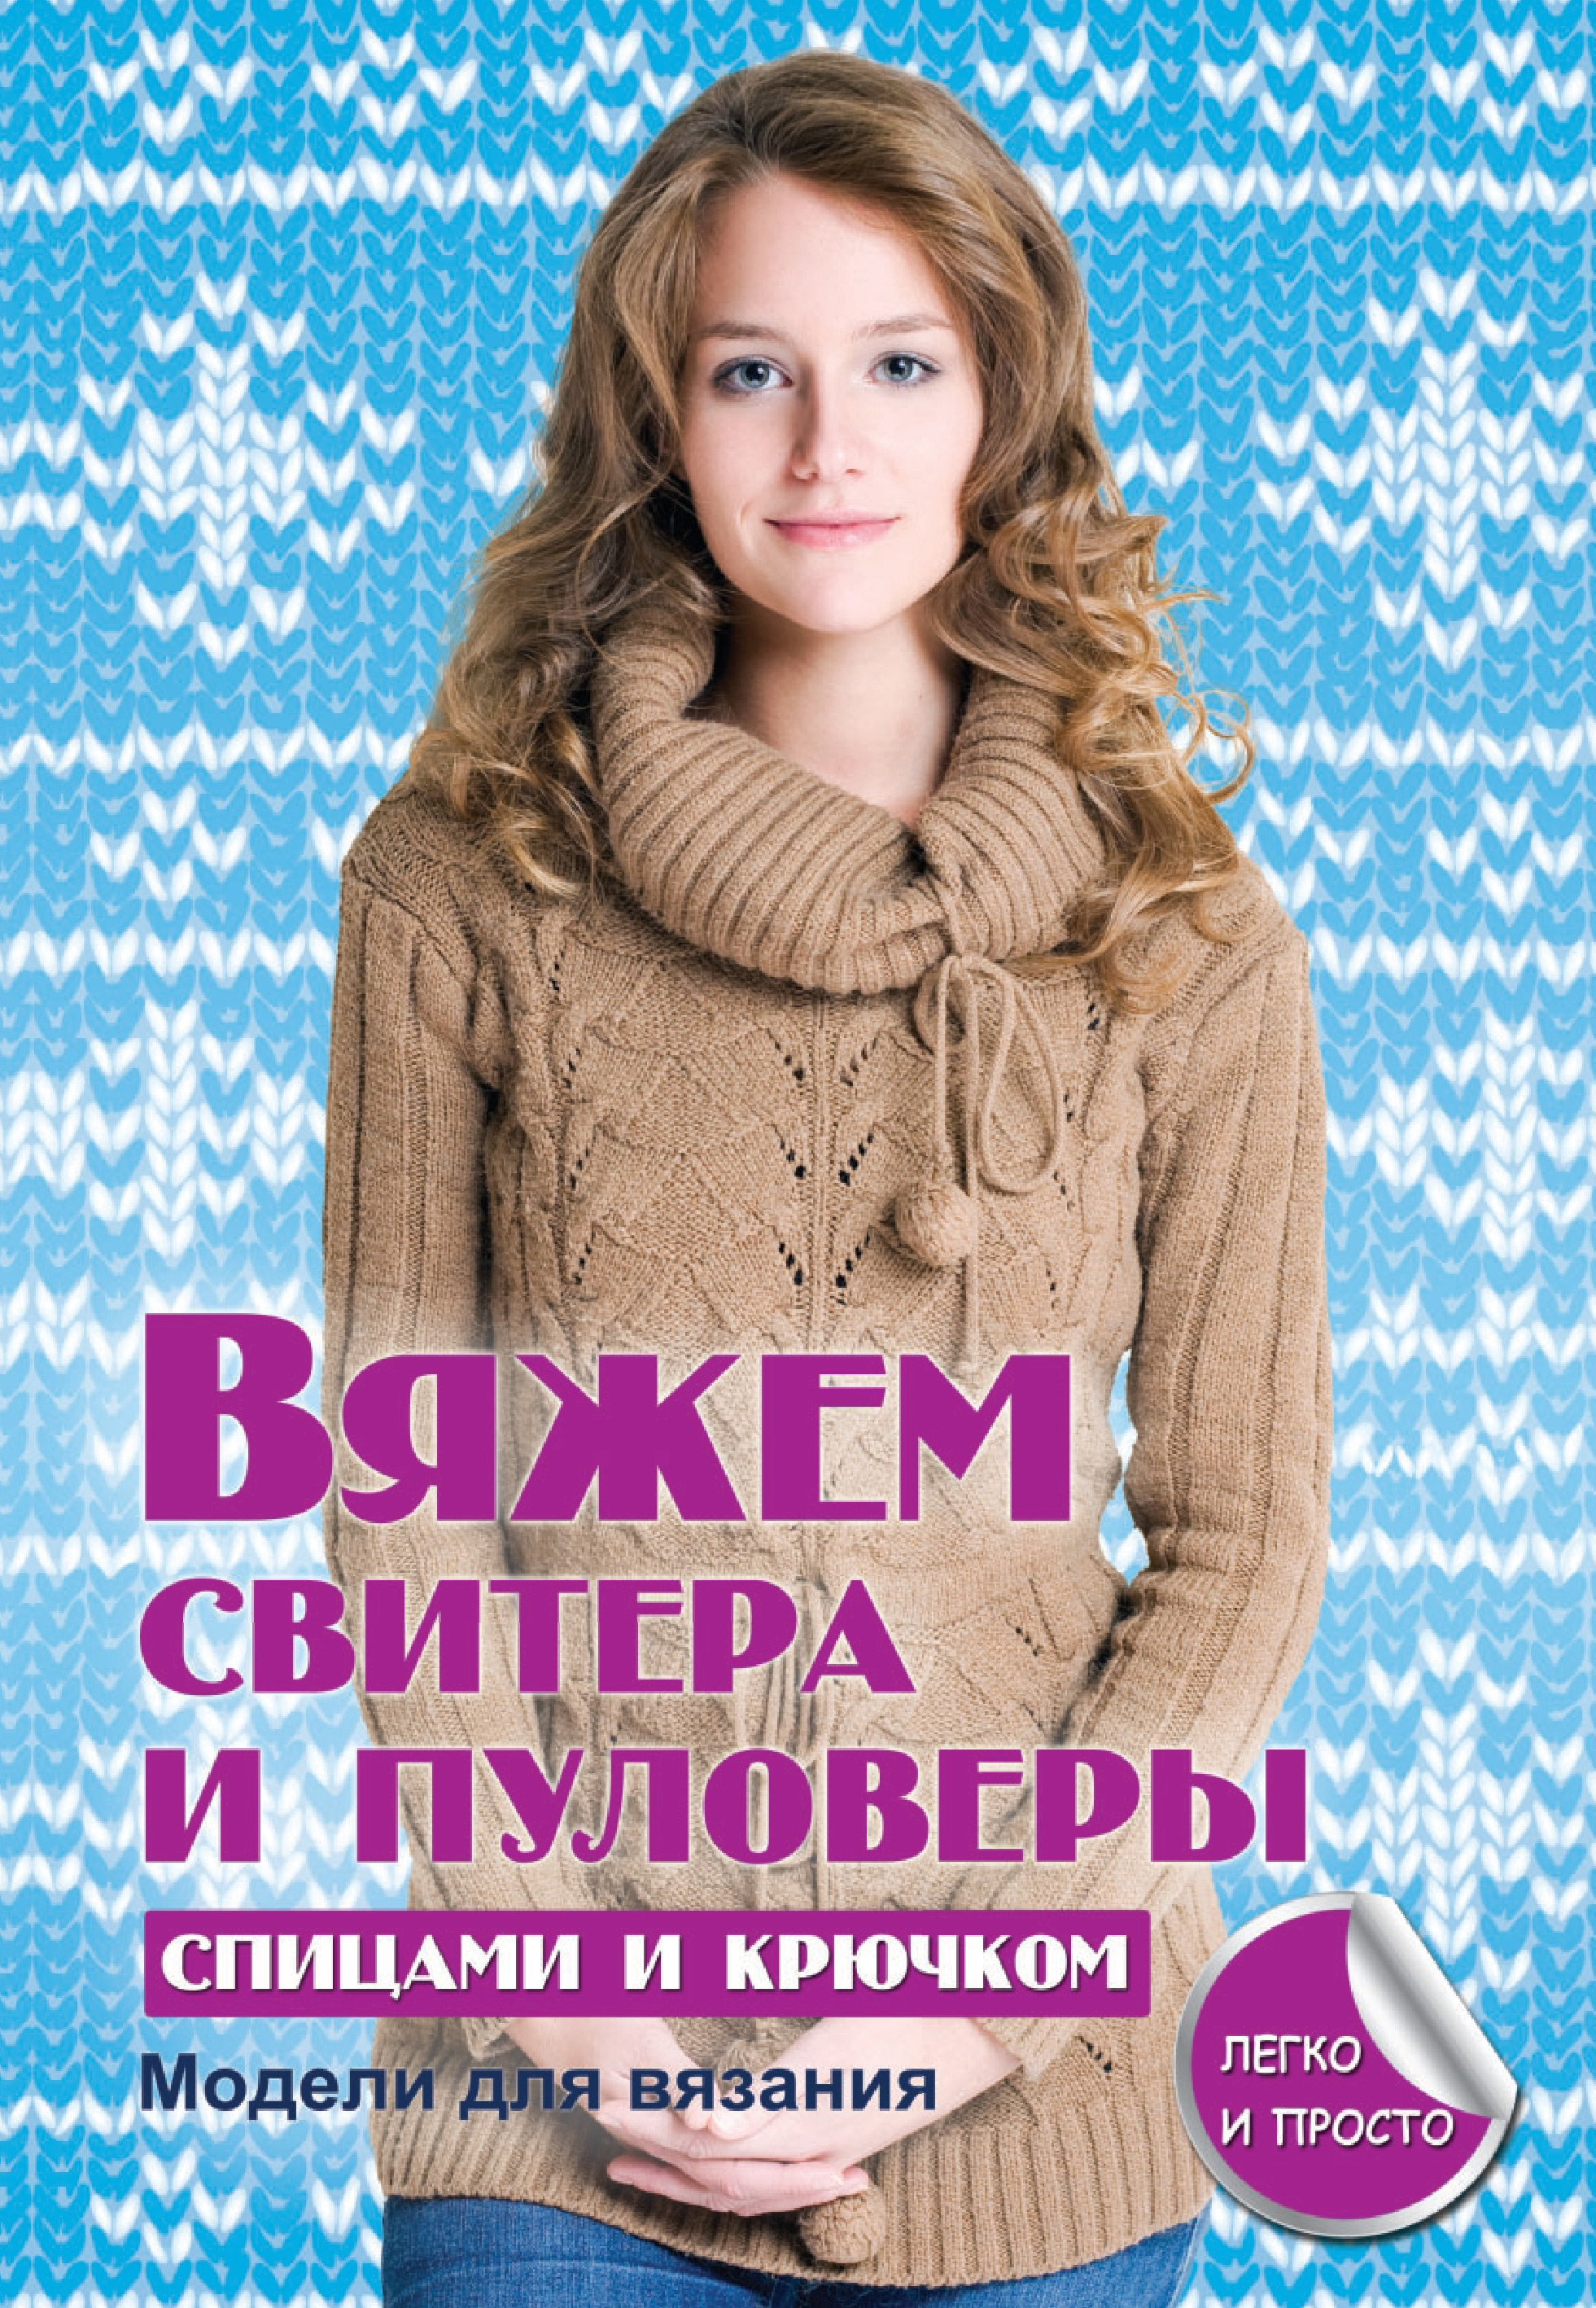 Страница №14 Хобби и досуг Рукоделие и хобби Жене купить в интернет - магазине: Киев и Украина